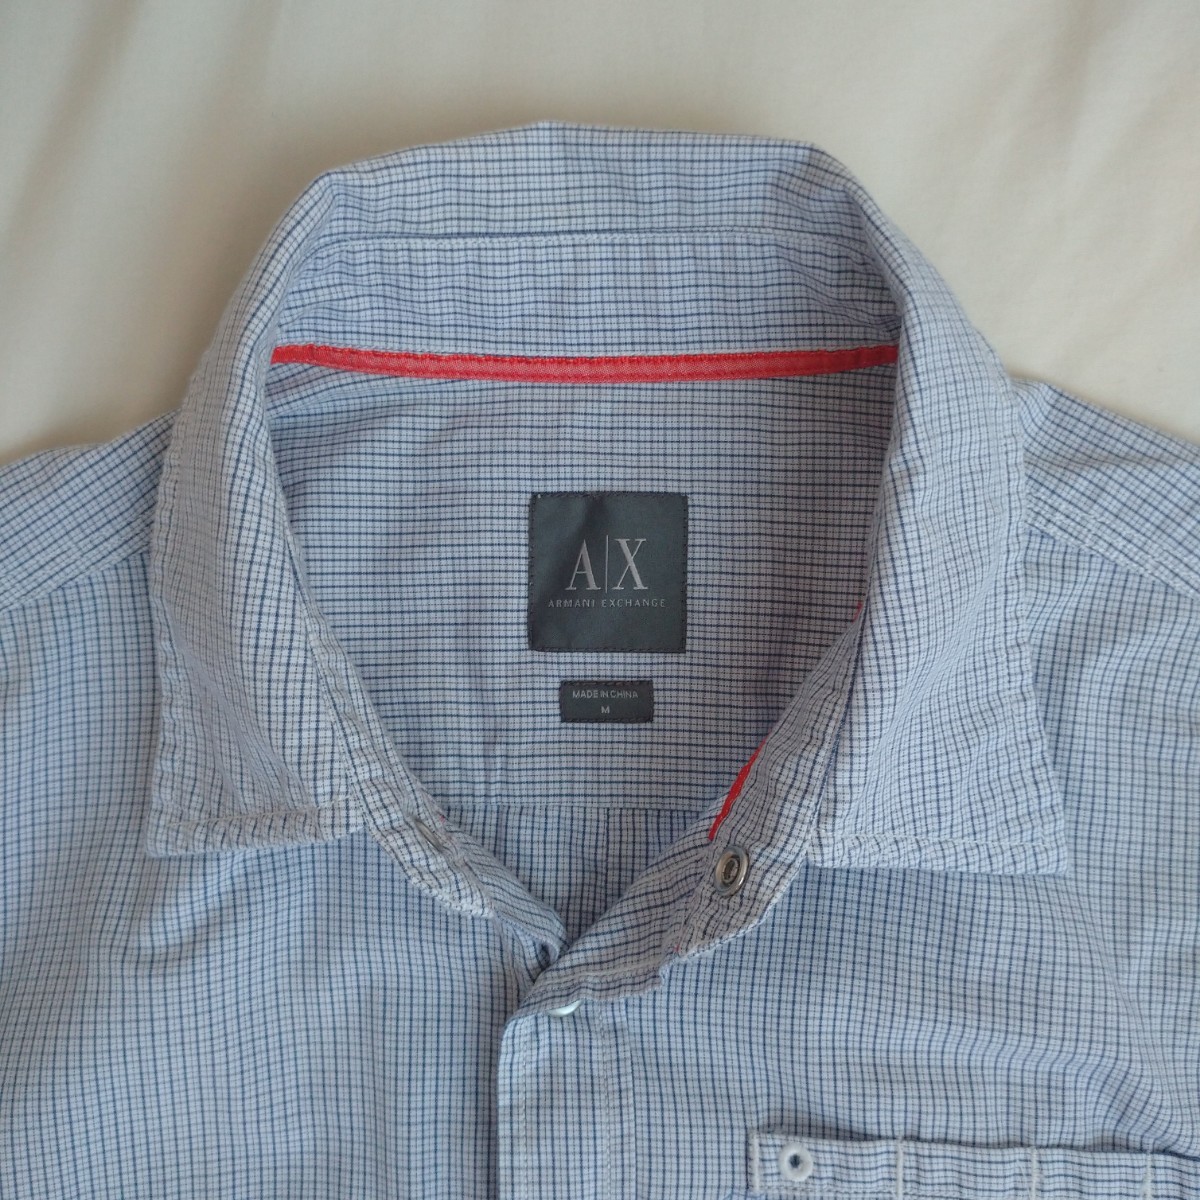 *ARMANI EXCHANGE проверка рубашка Armani Exchange осмотр уличный VINTAGE Vintage Vintage 90s 90 годы Street 